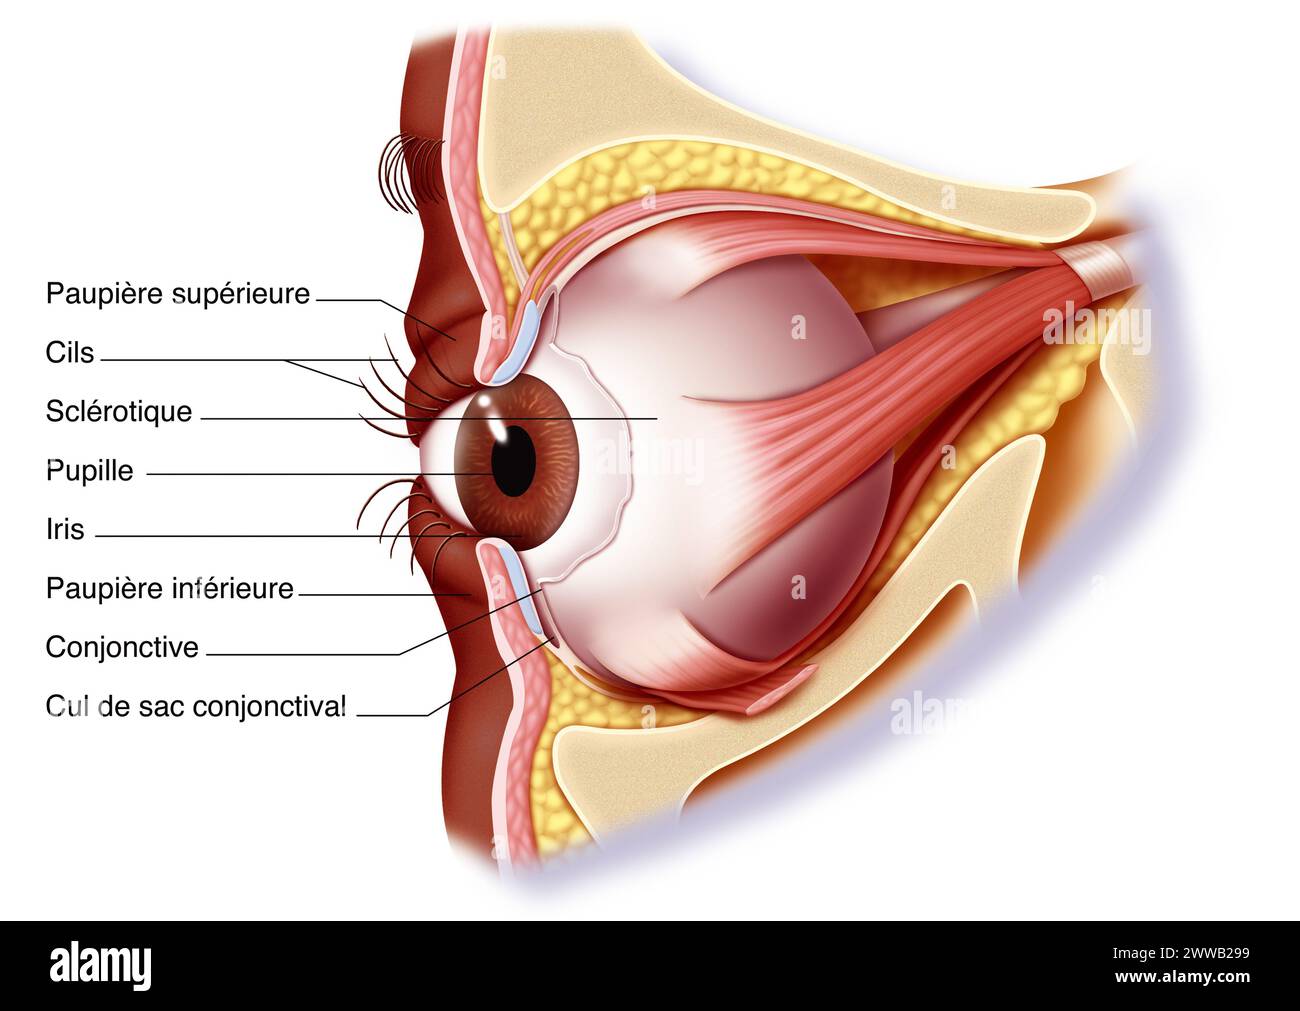 Les muscles de l'œil et de la paupière. Représentation de l'anatomie des muscles de l'œil droit vu du côté interne ou médian 3/4. Banque D'Images